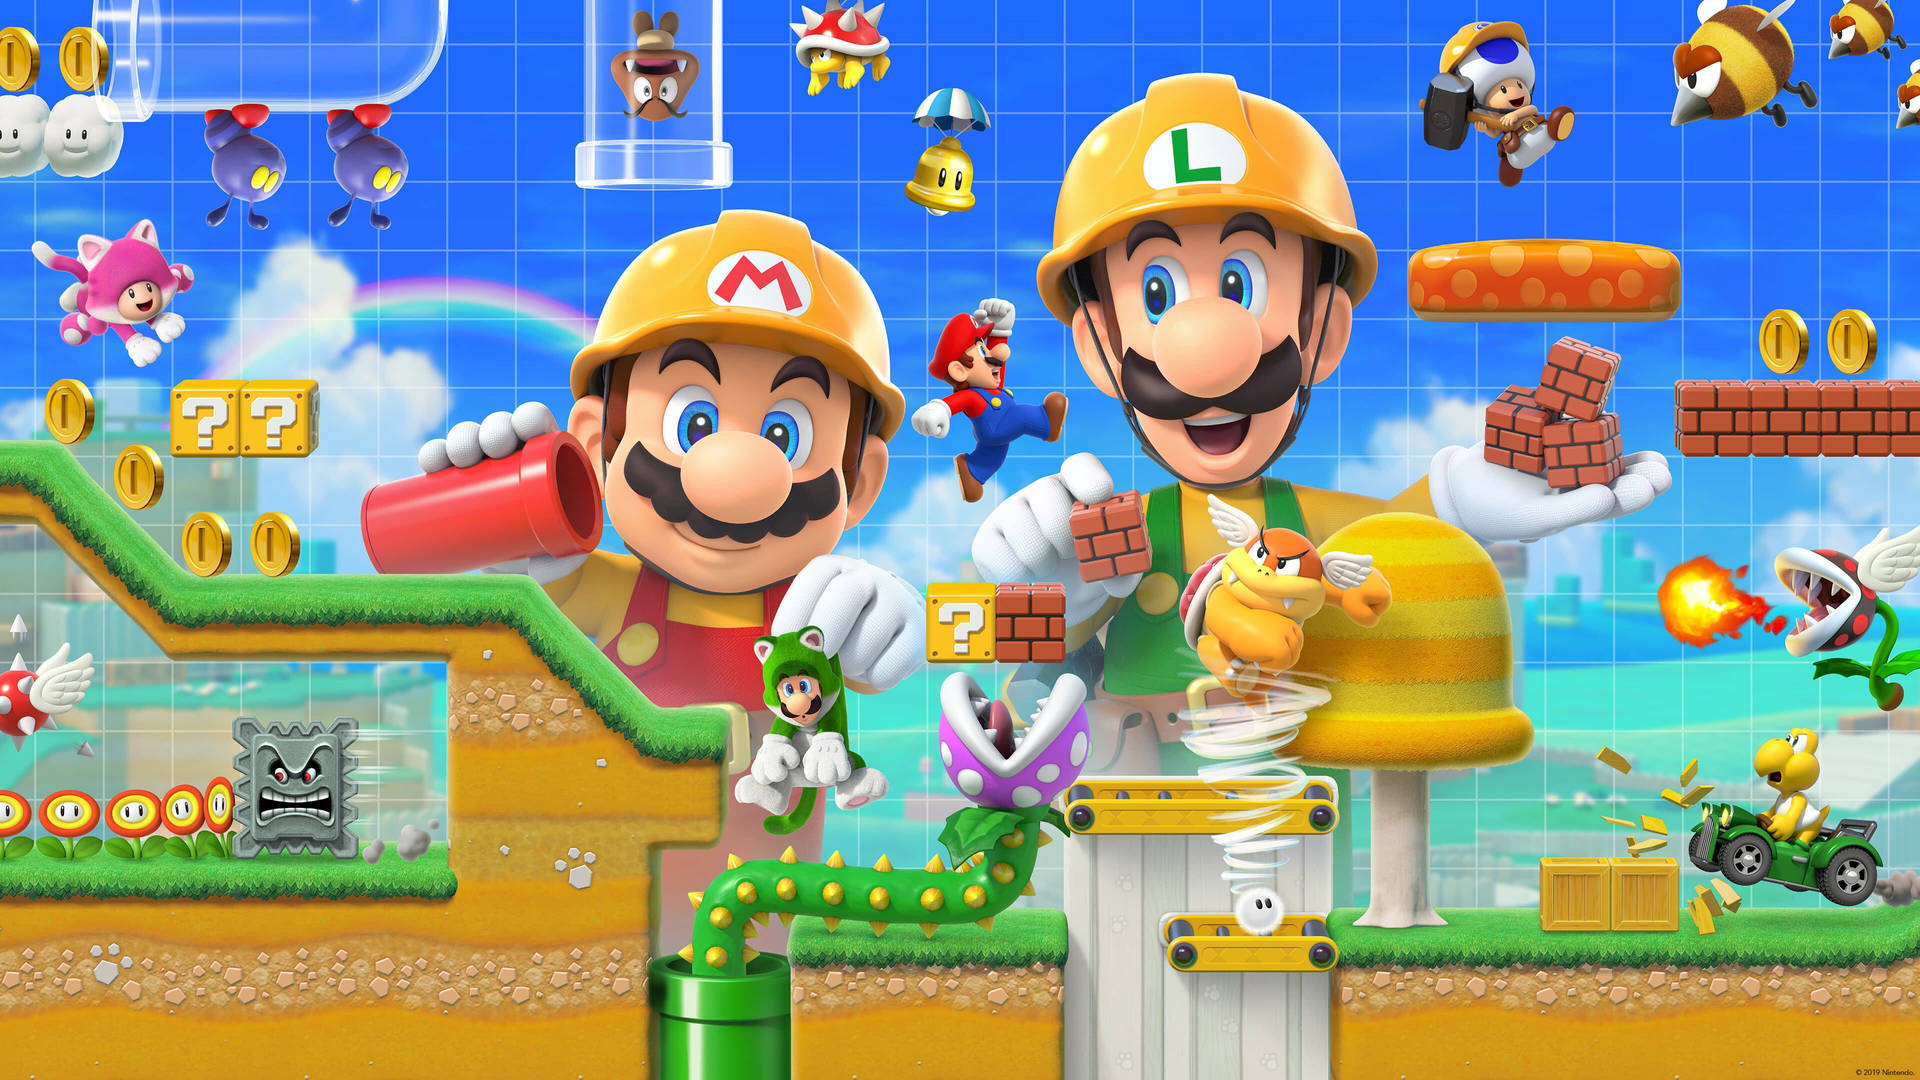 Super Mario Maker With Luigi